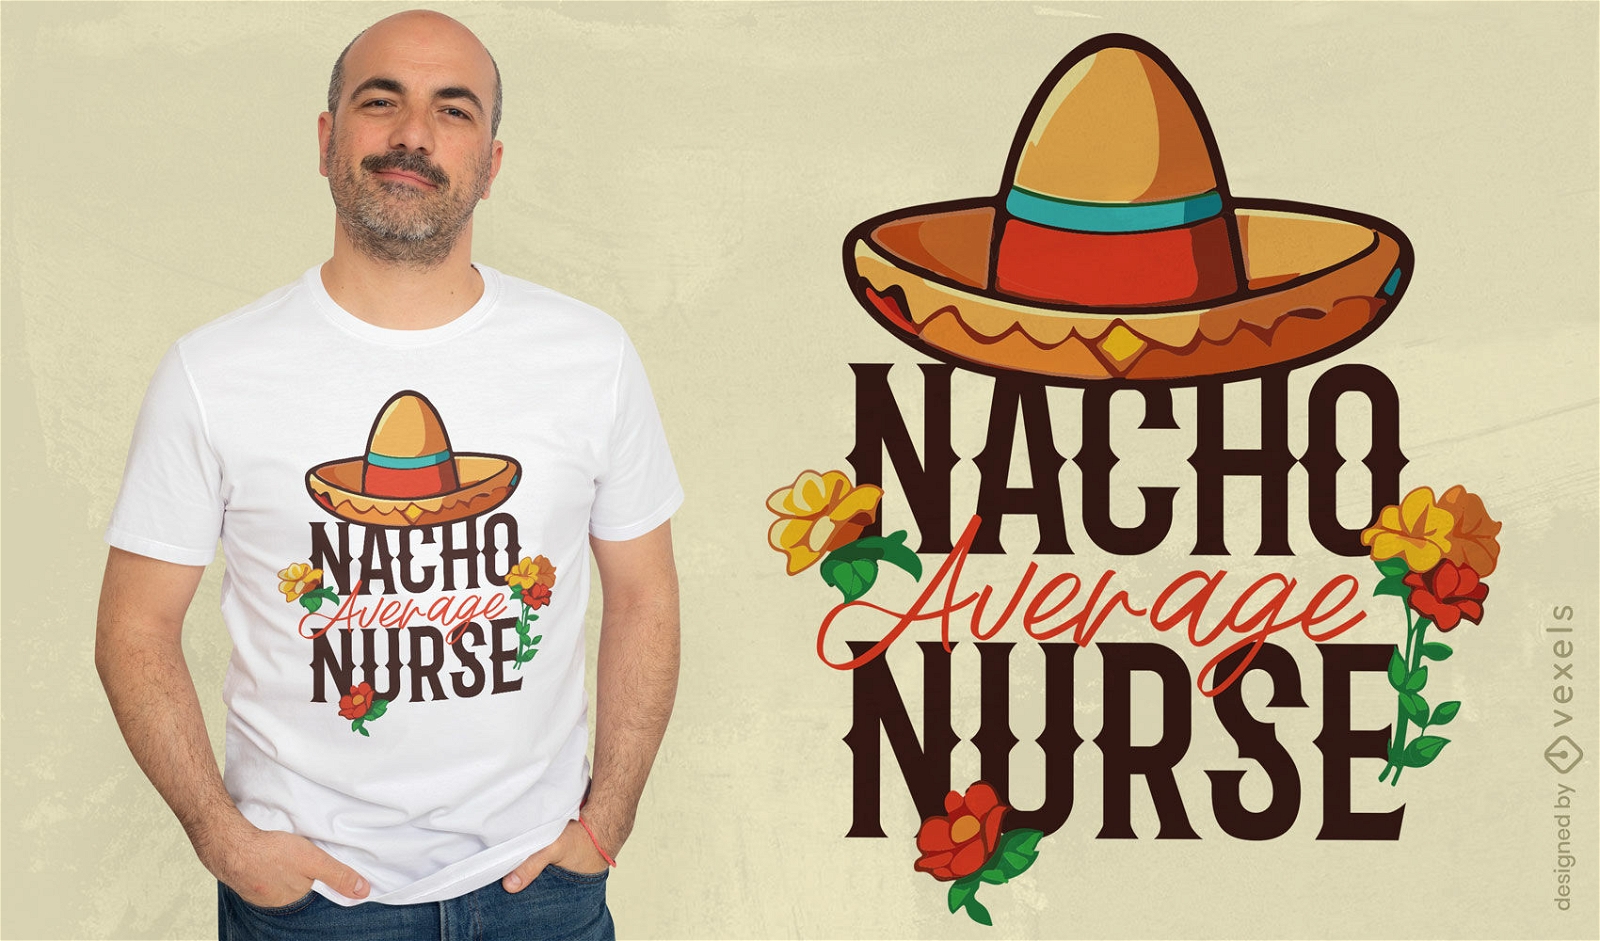 Diseño de camiseta con un juego de palabras con temática de nachos.